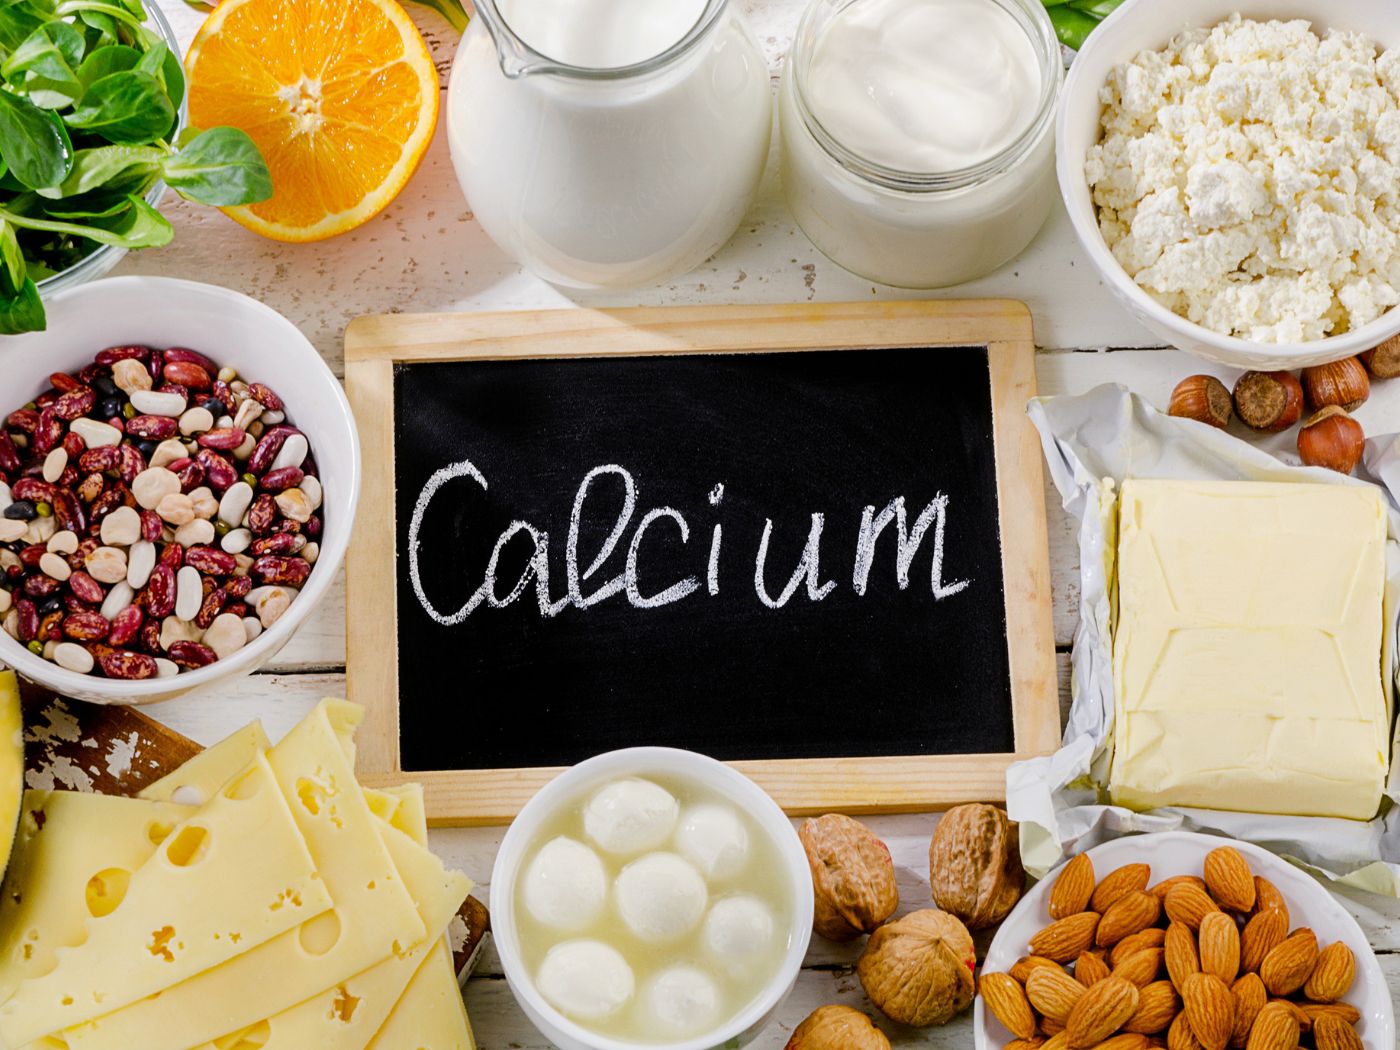 Benefits Of Calcium